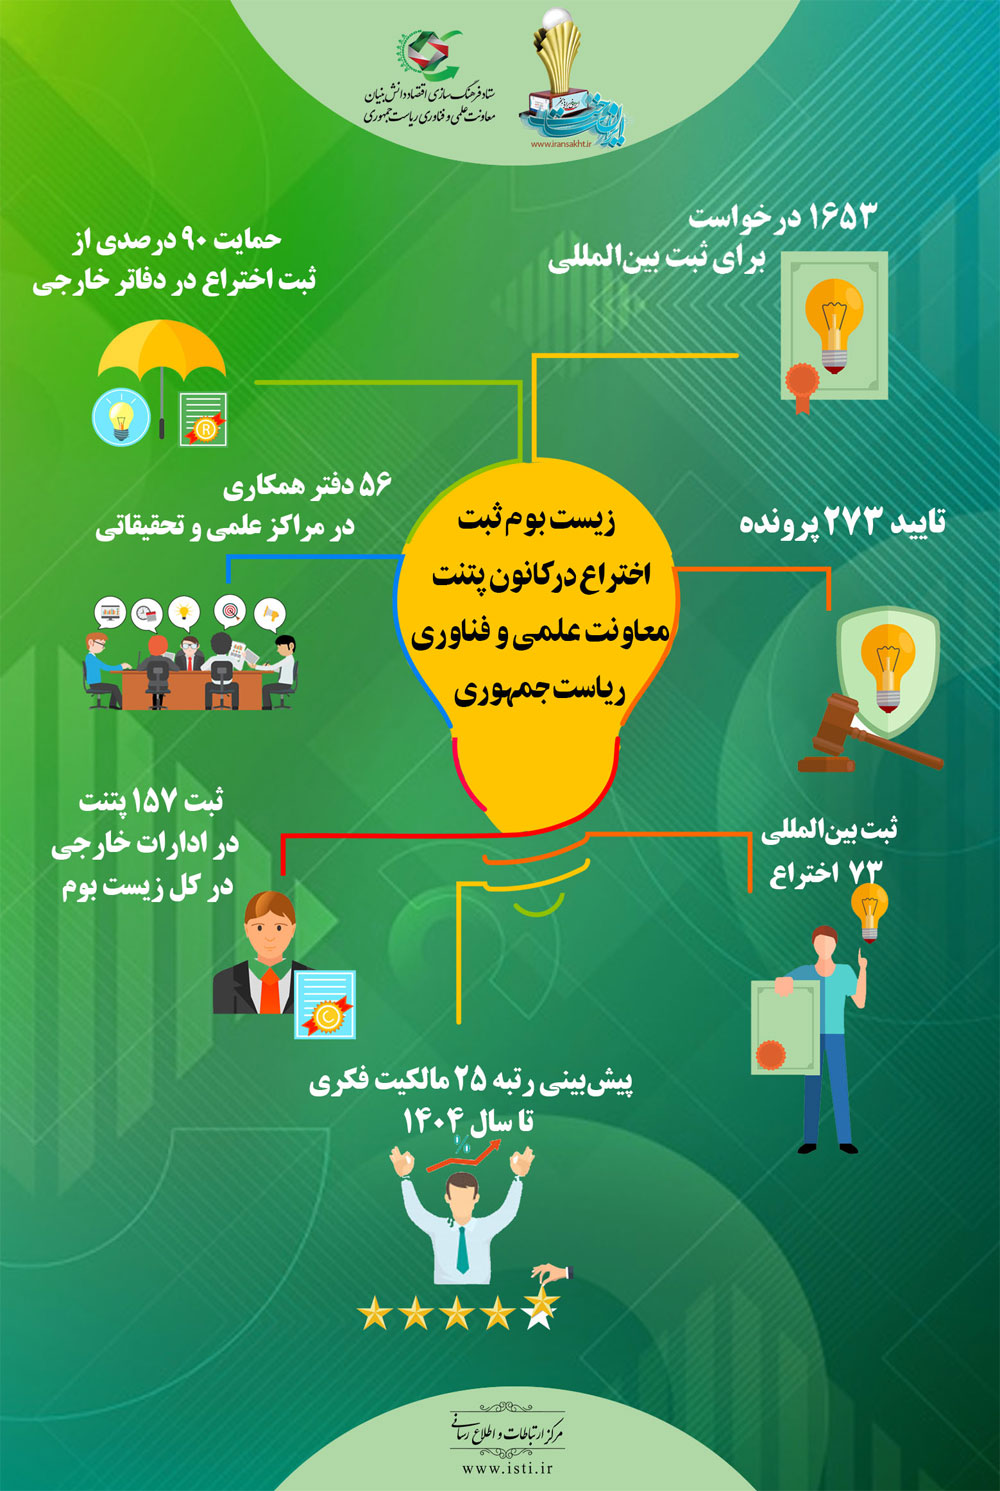 اوضاع ثبت پتنت در ایران خوب است / دریافت ۷۳ گرنت خارجی